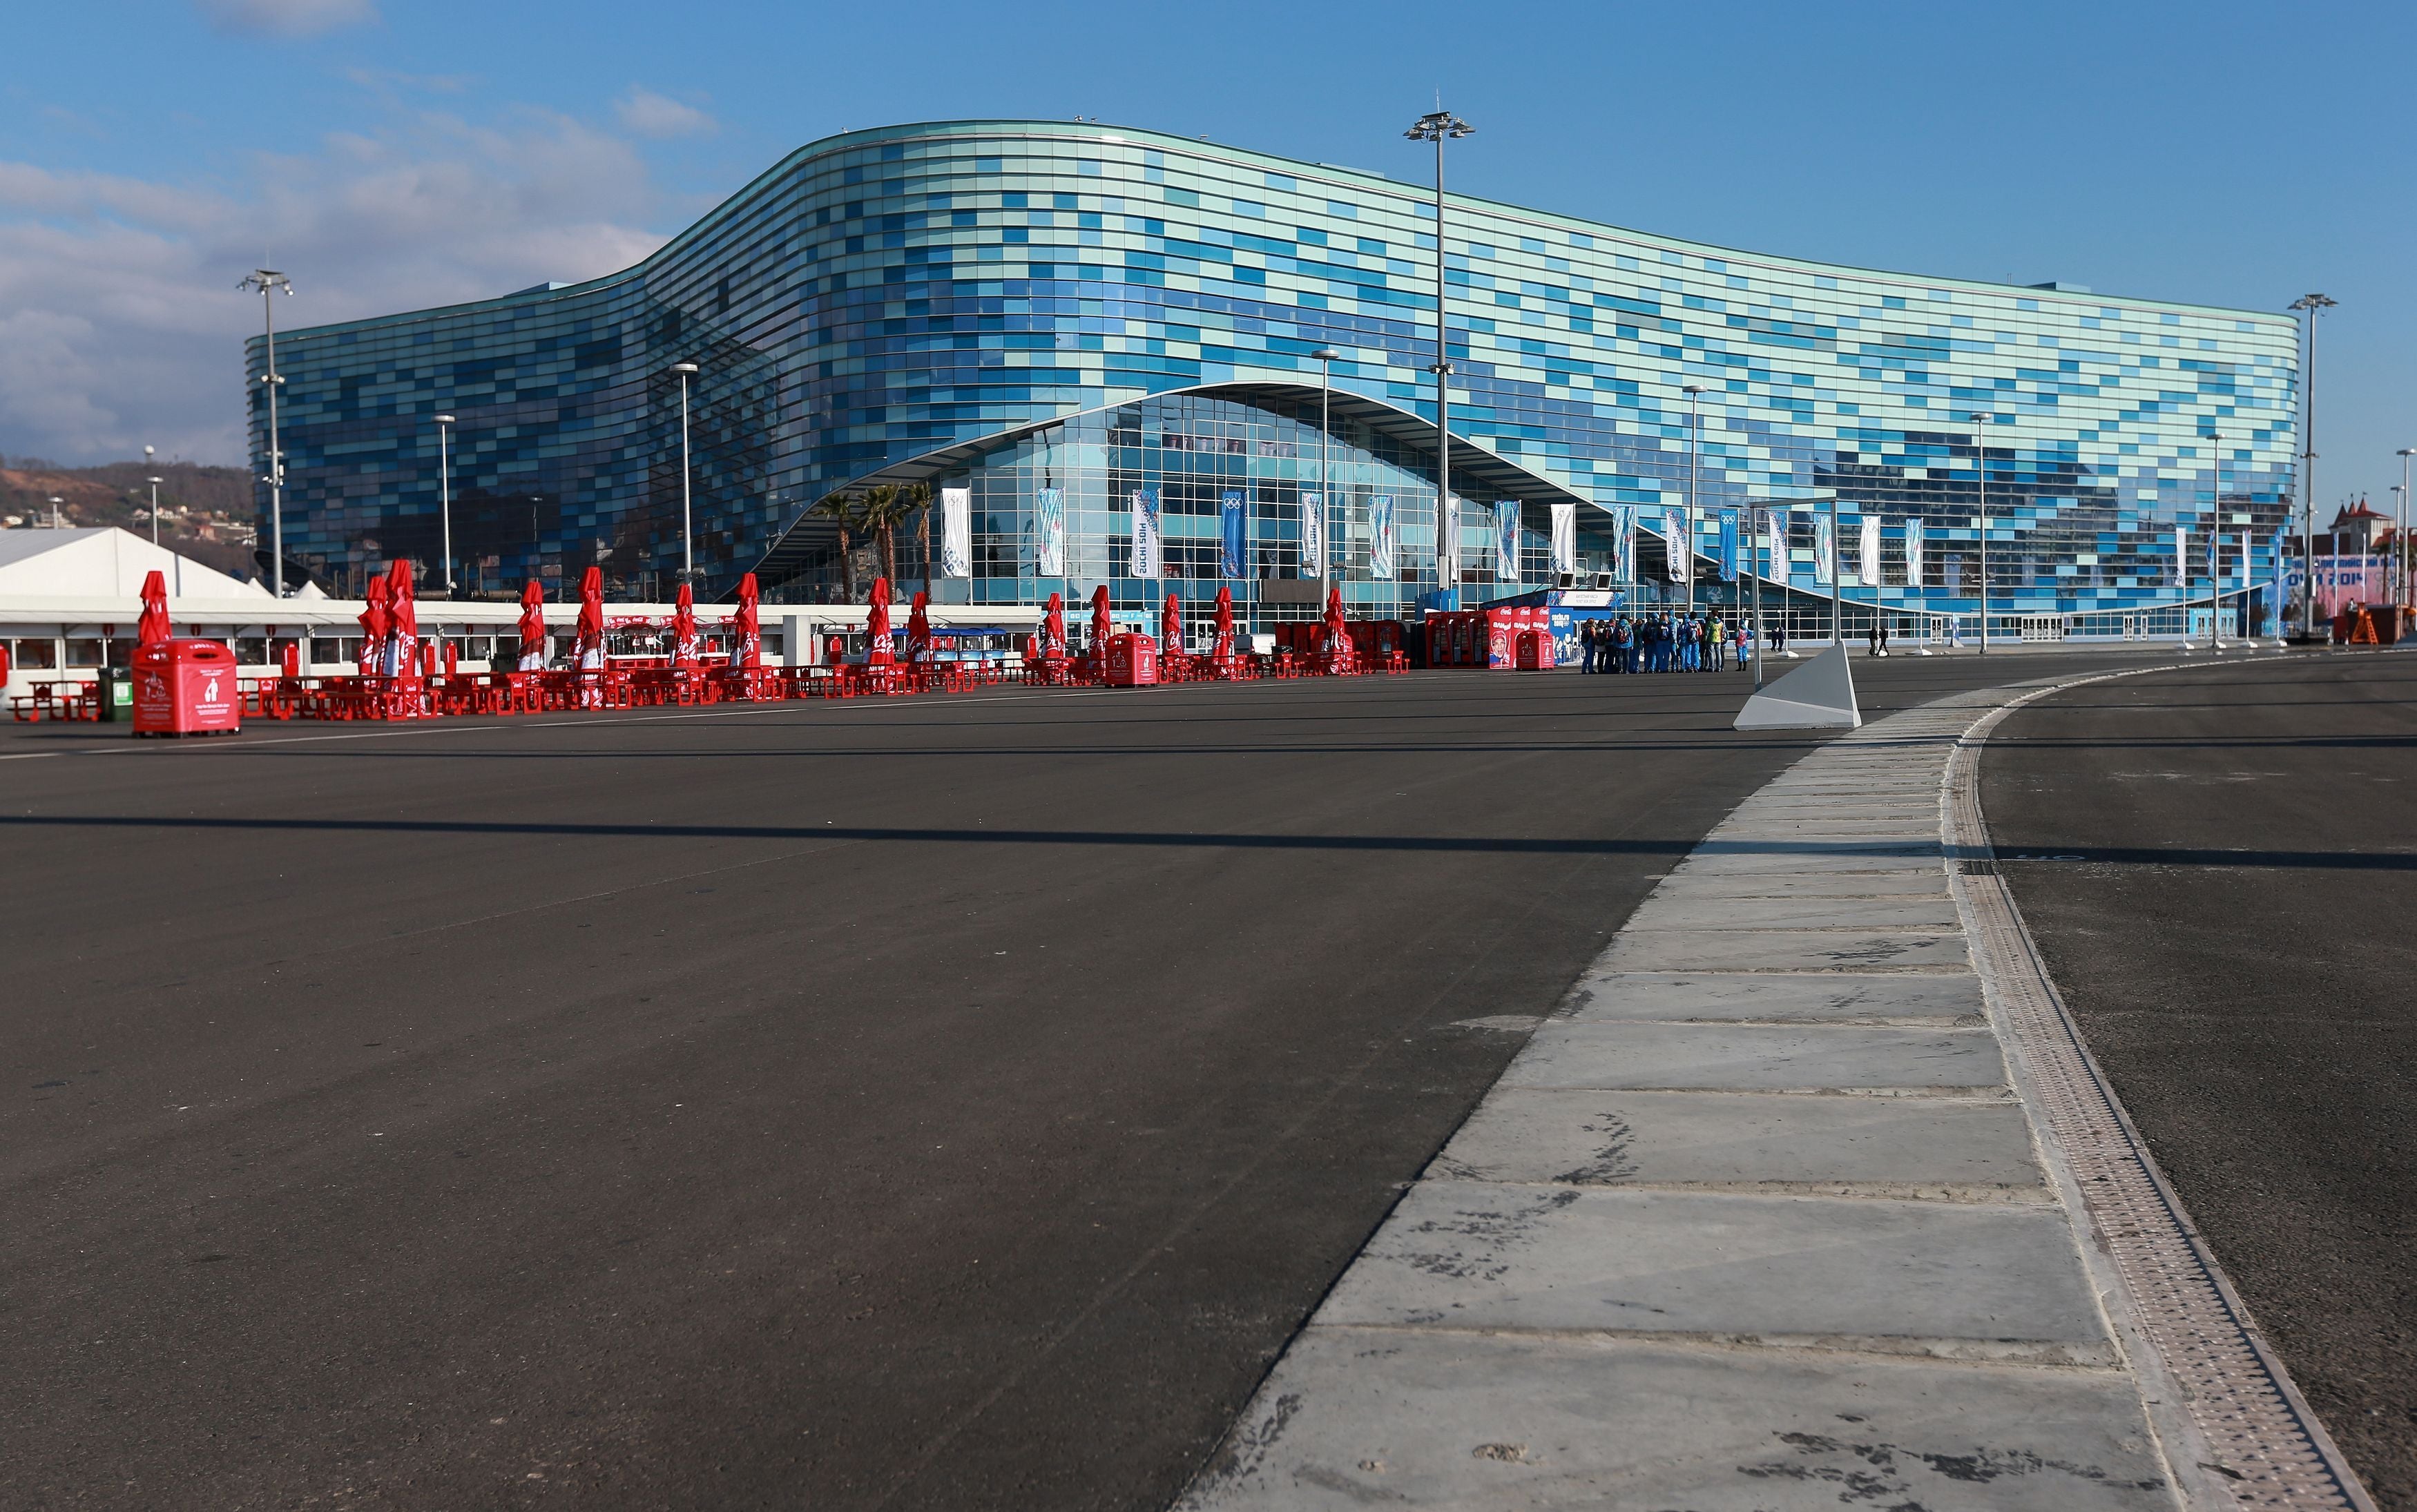 The current Russian Grand Prix circuit in Sochi